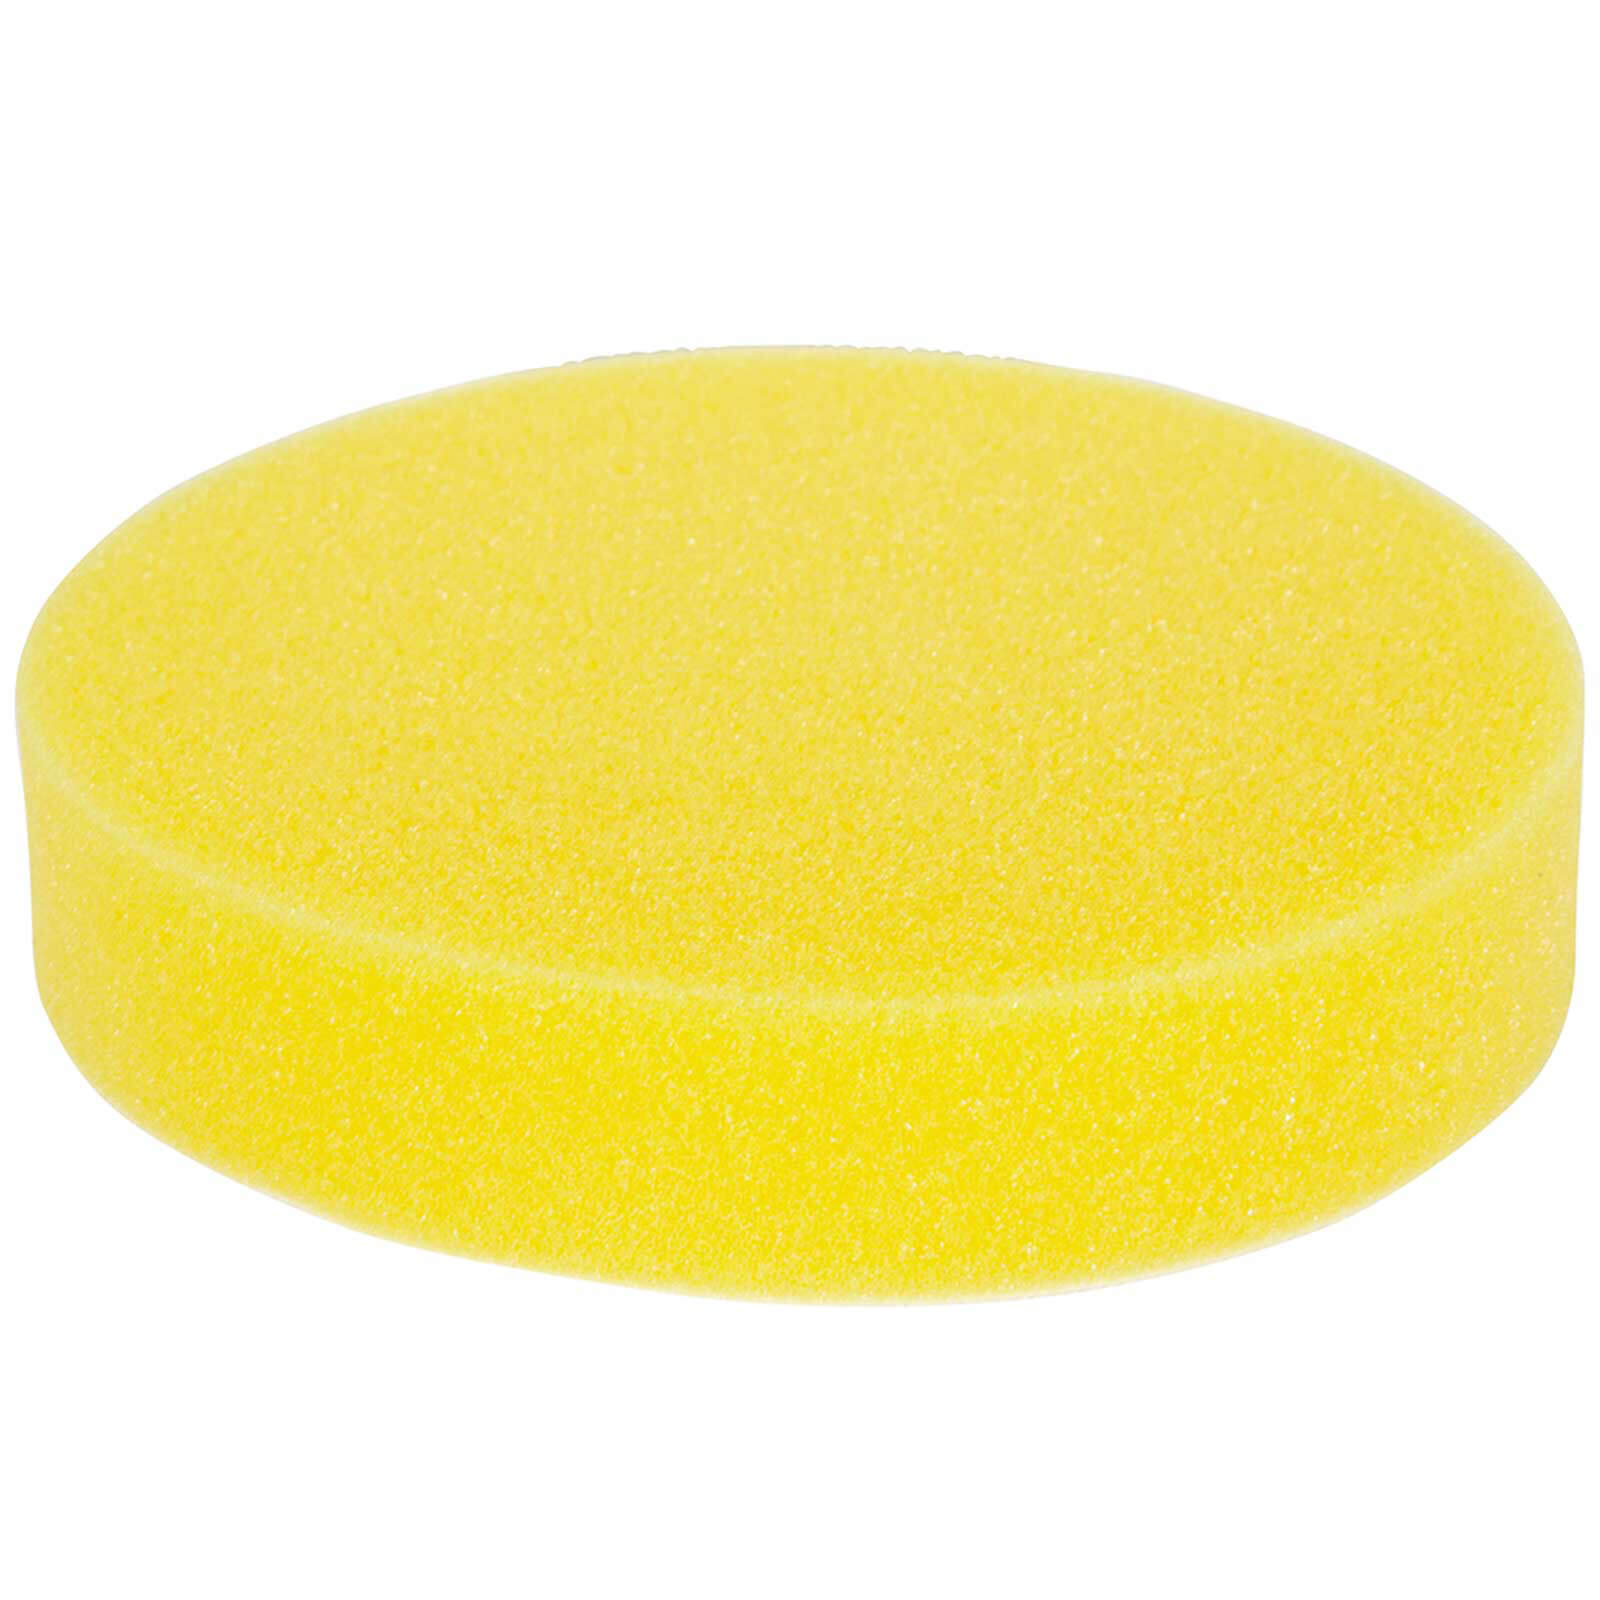 Image of Makita Polisher Sponge Pad 150mm 150mm